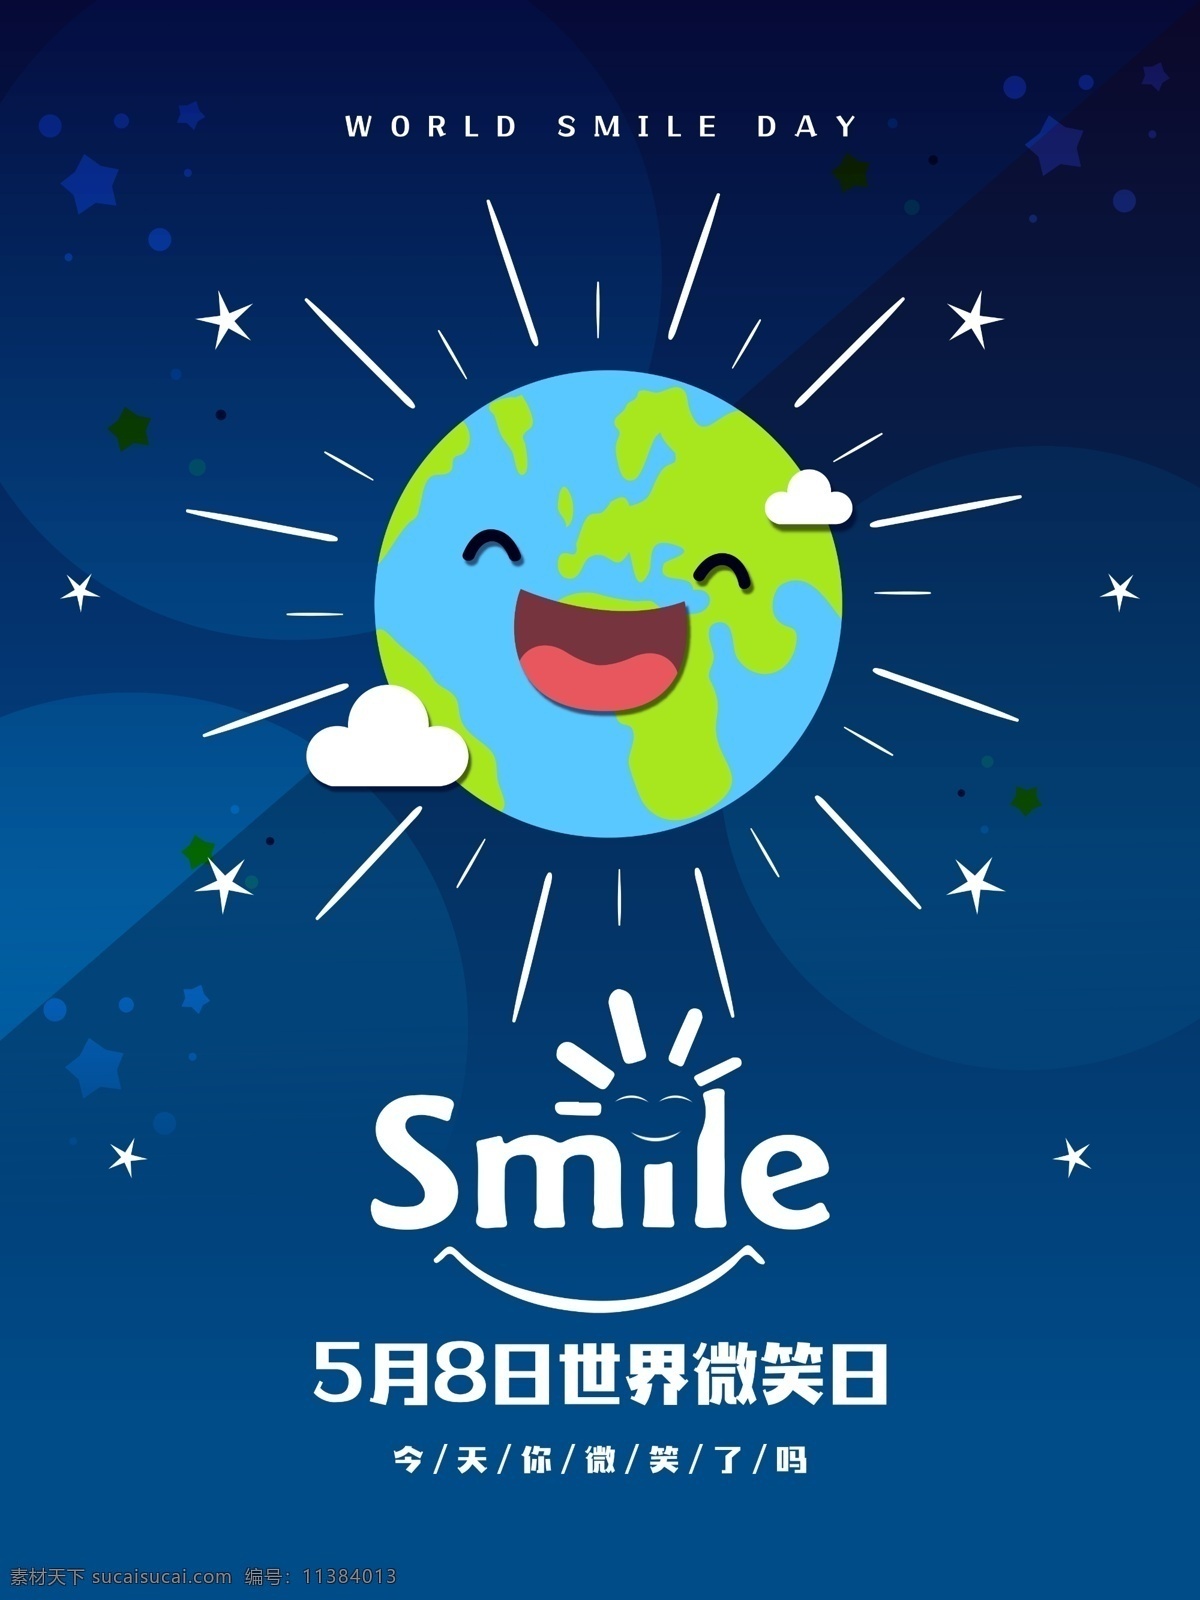 世界微笑日创意笑脸可爱手机海报_图片模板素材-稿定设计